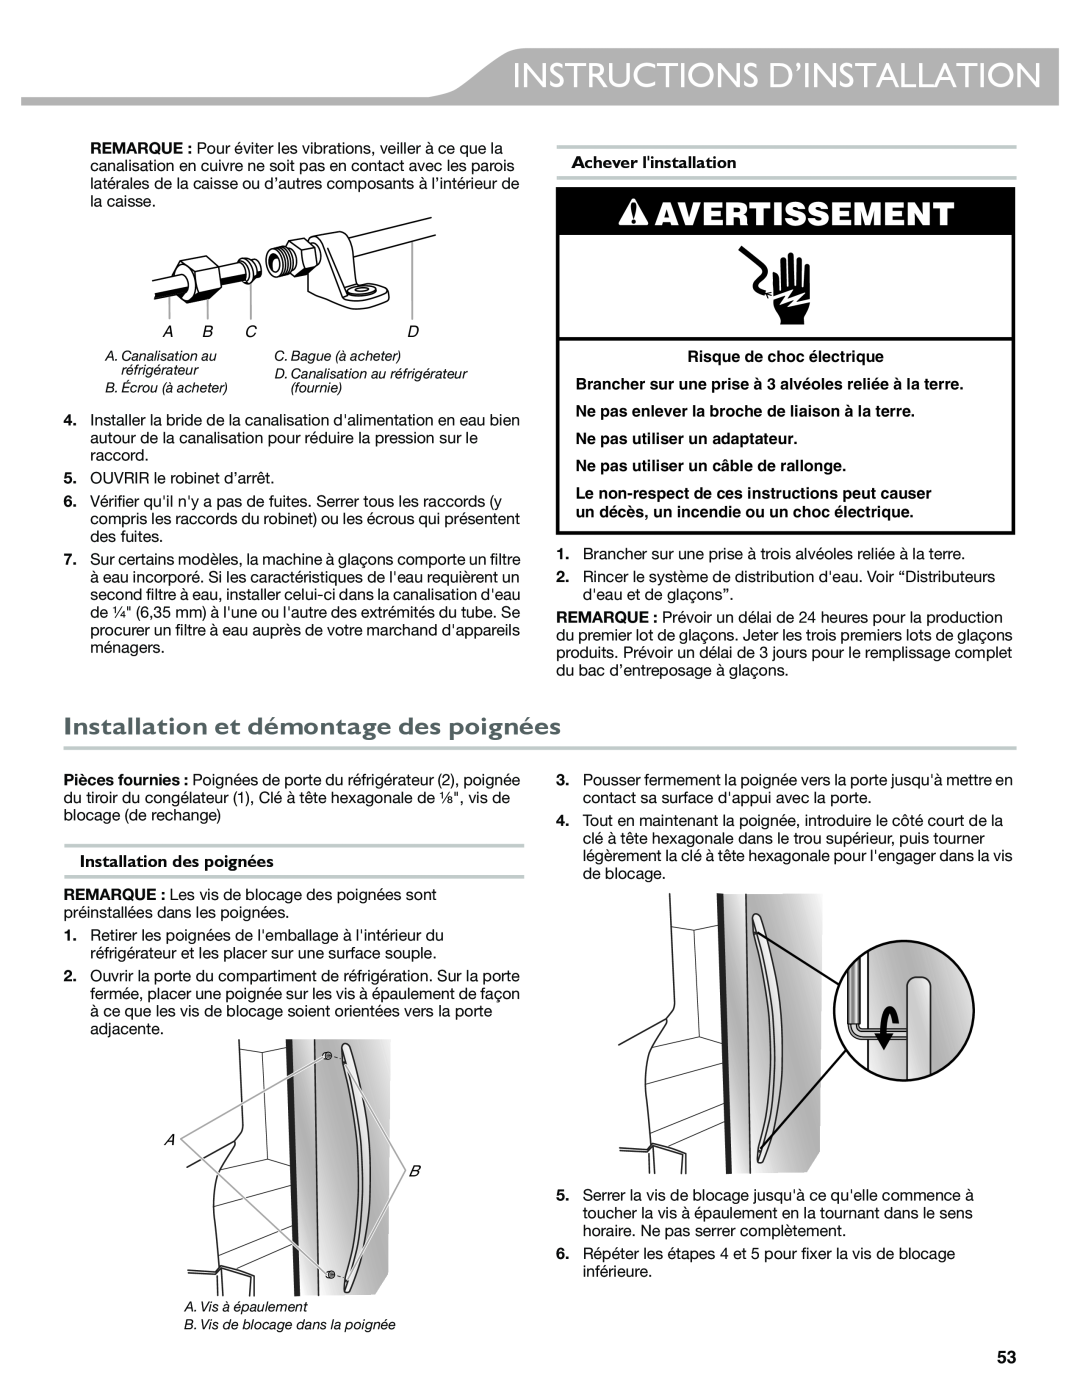 KitchenAid W10417002A manual Installation et démontage des poignées, Achever linstallation, Installation des poignées 